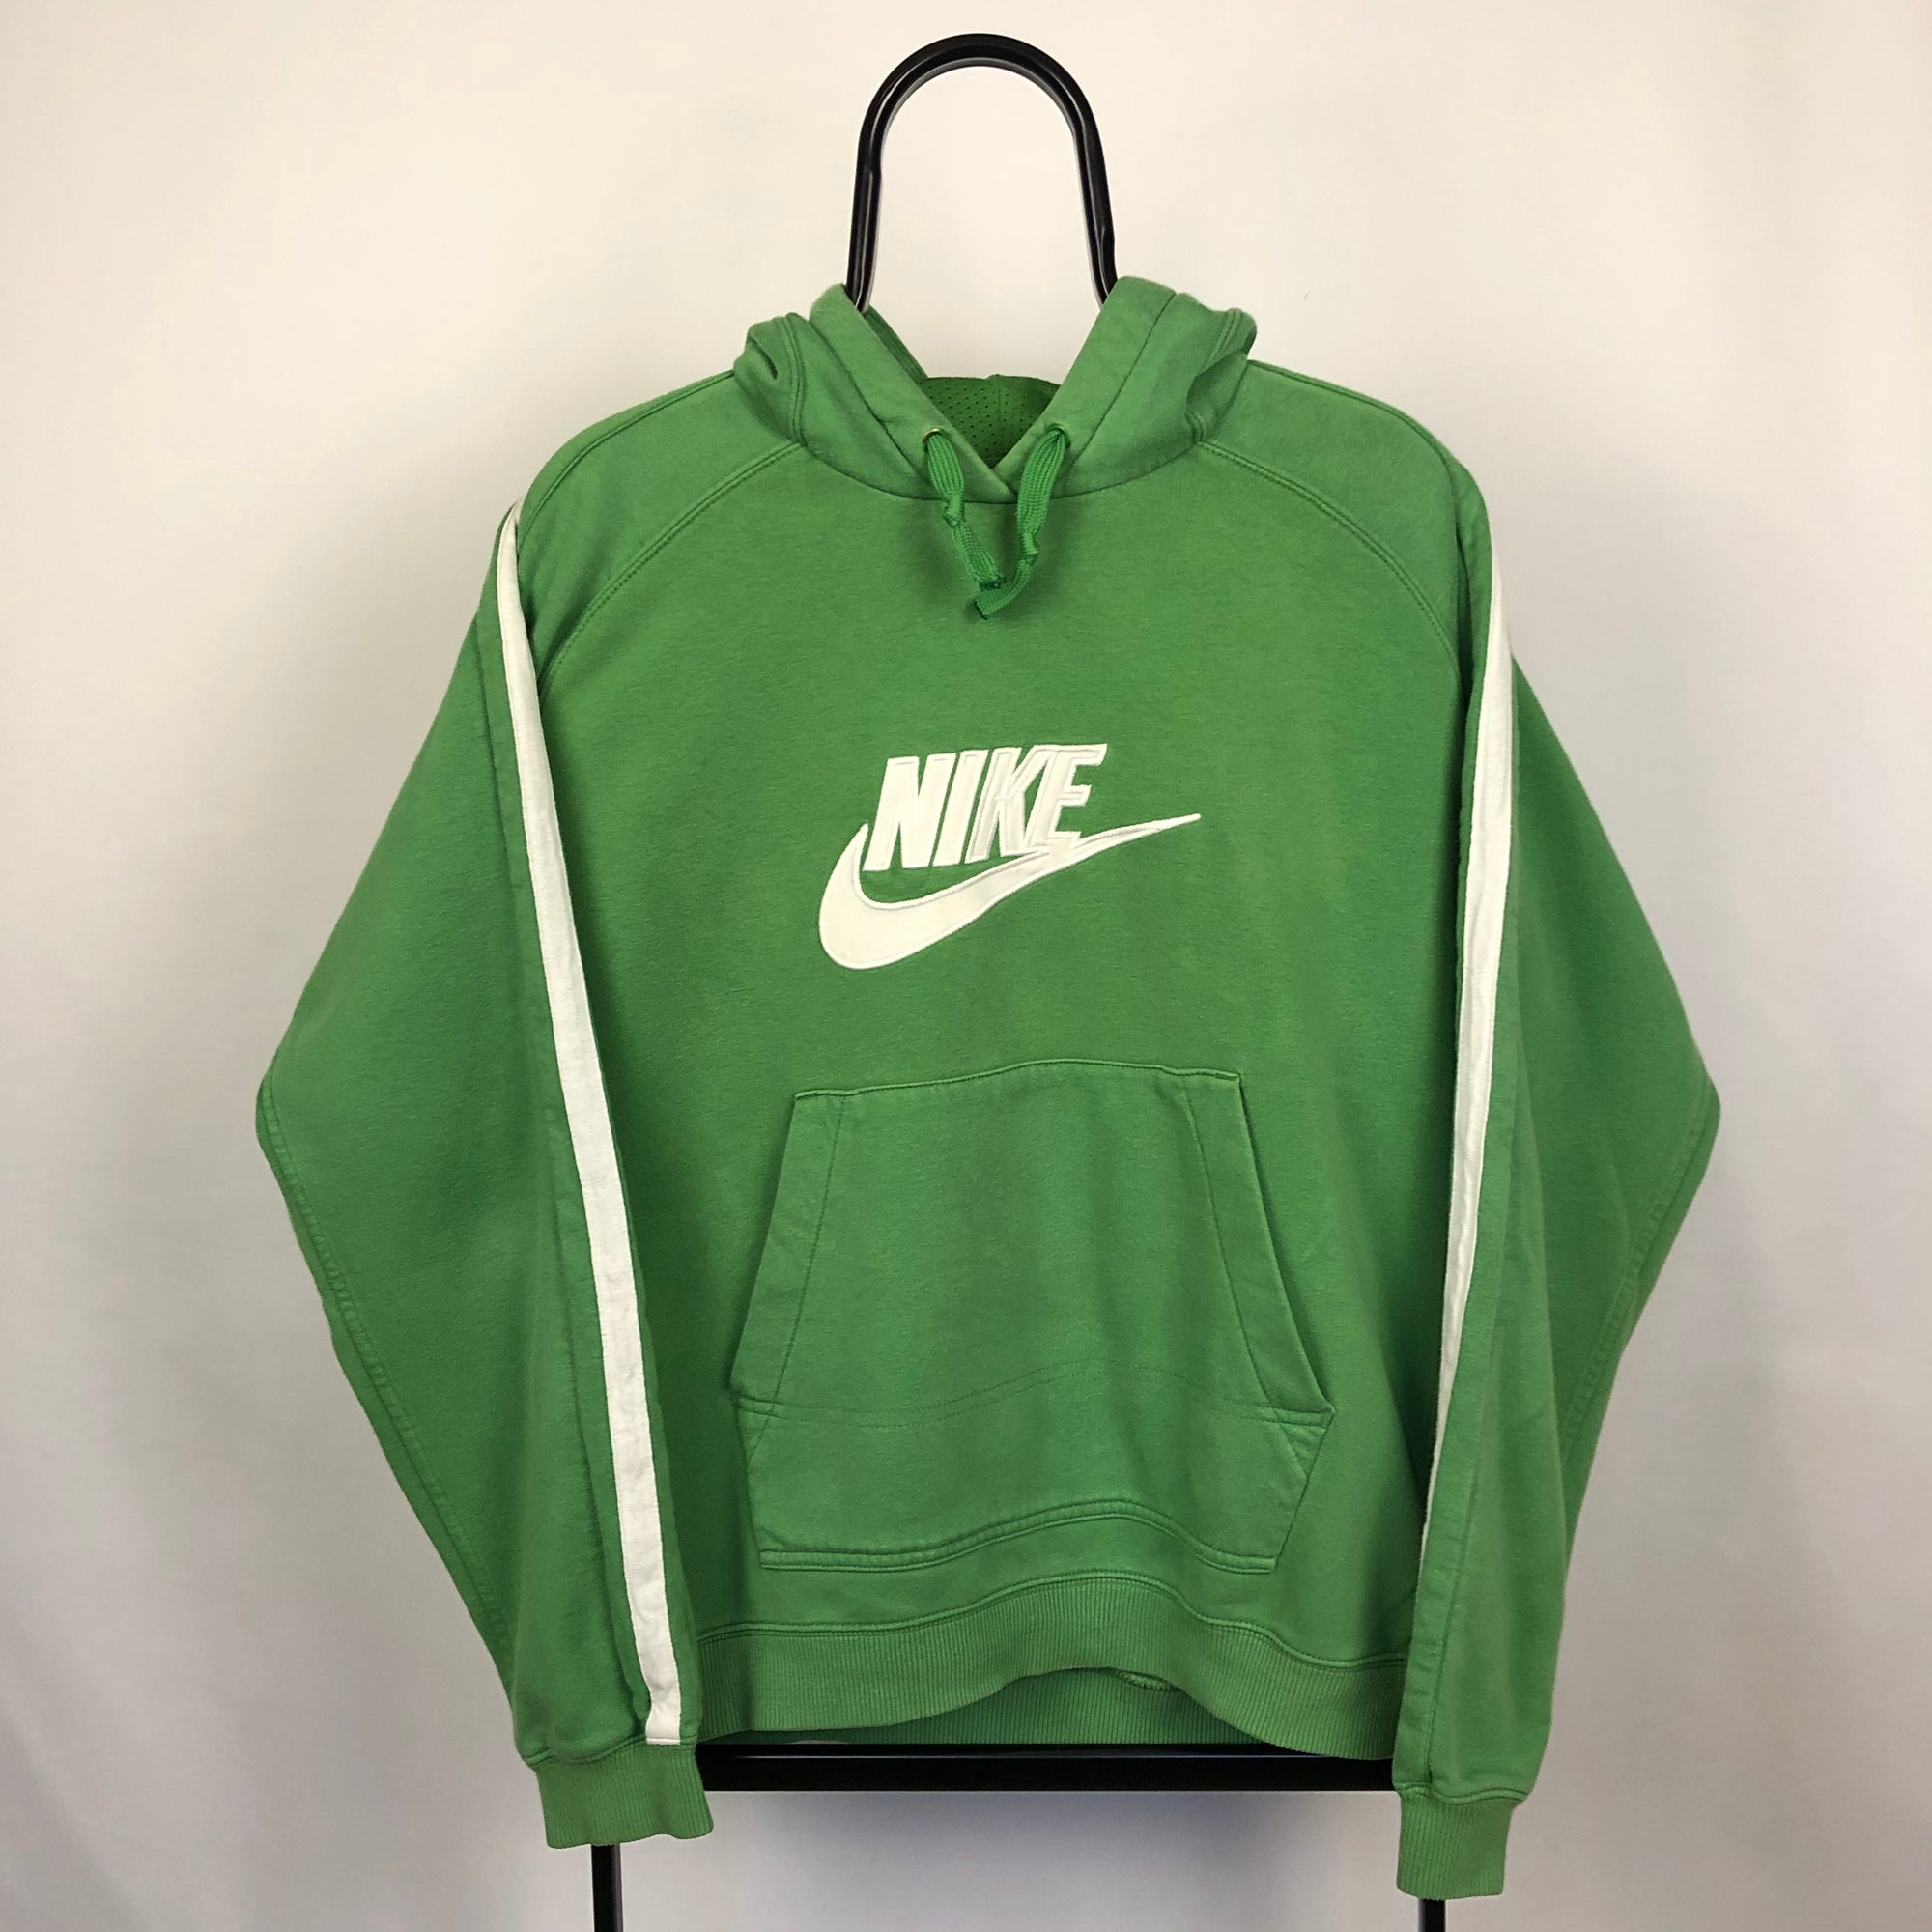 Vintage Nike Hoodie in Green - Men's Medium/Women's Large